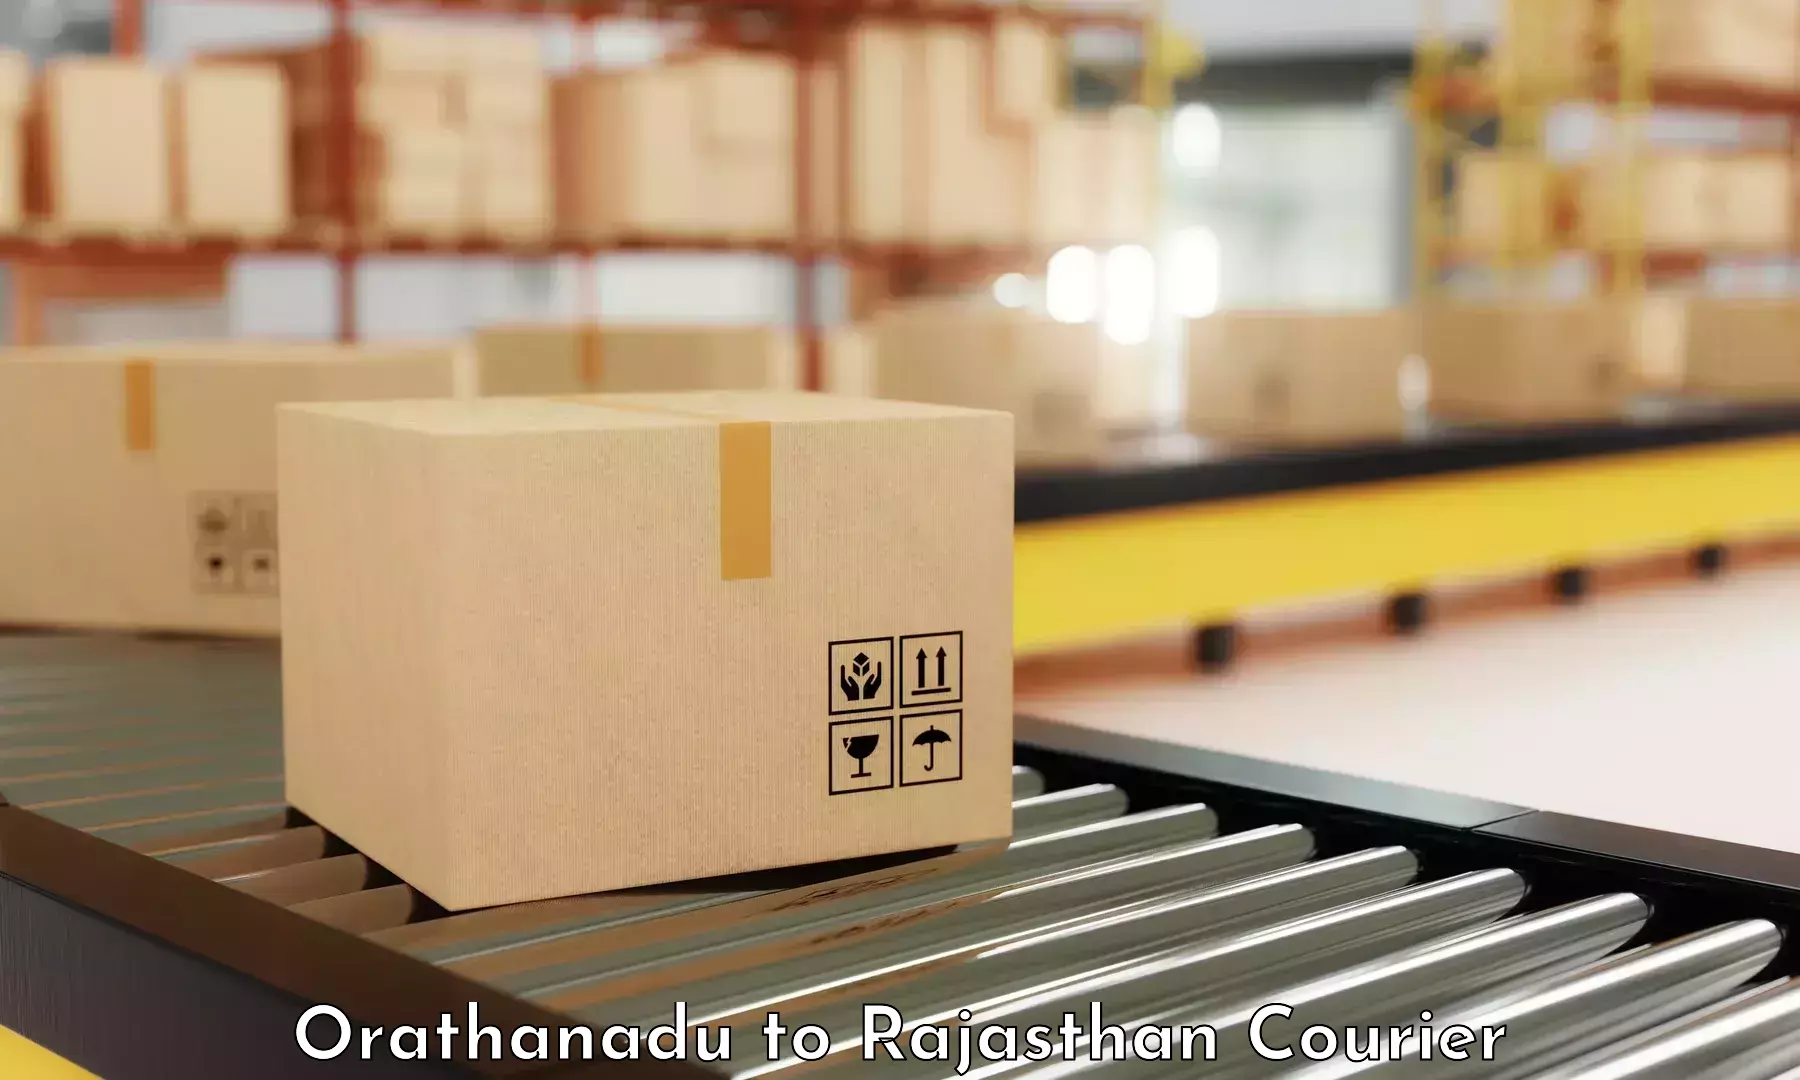 Modern courier technology in Orathanadu to Churu